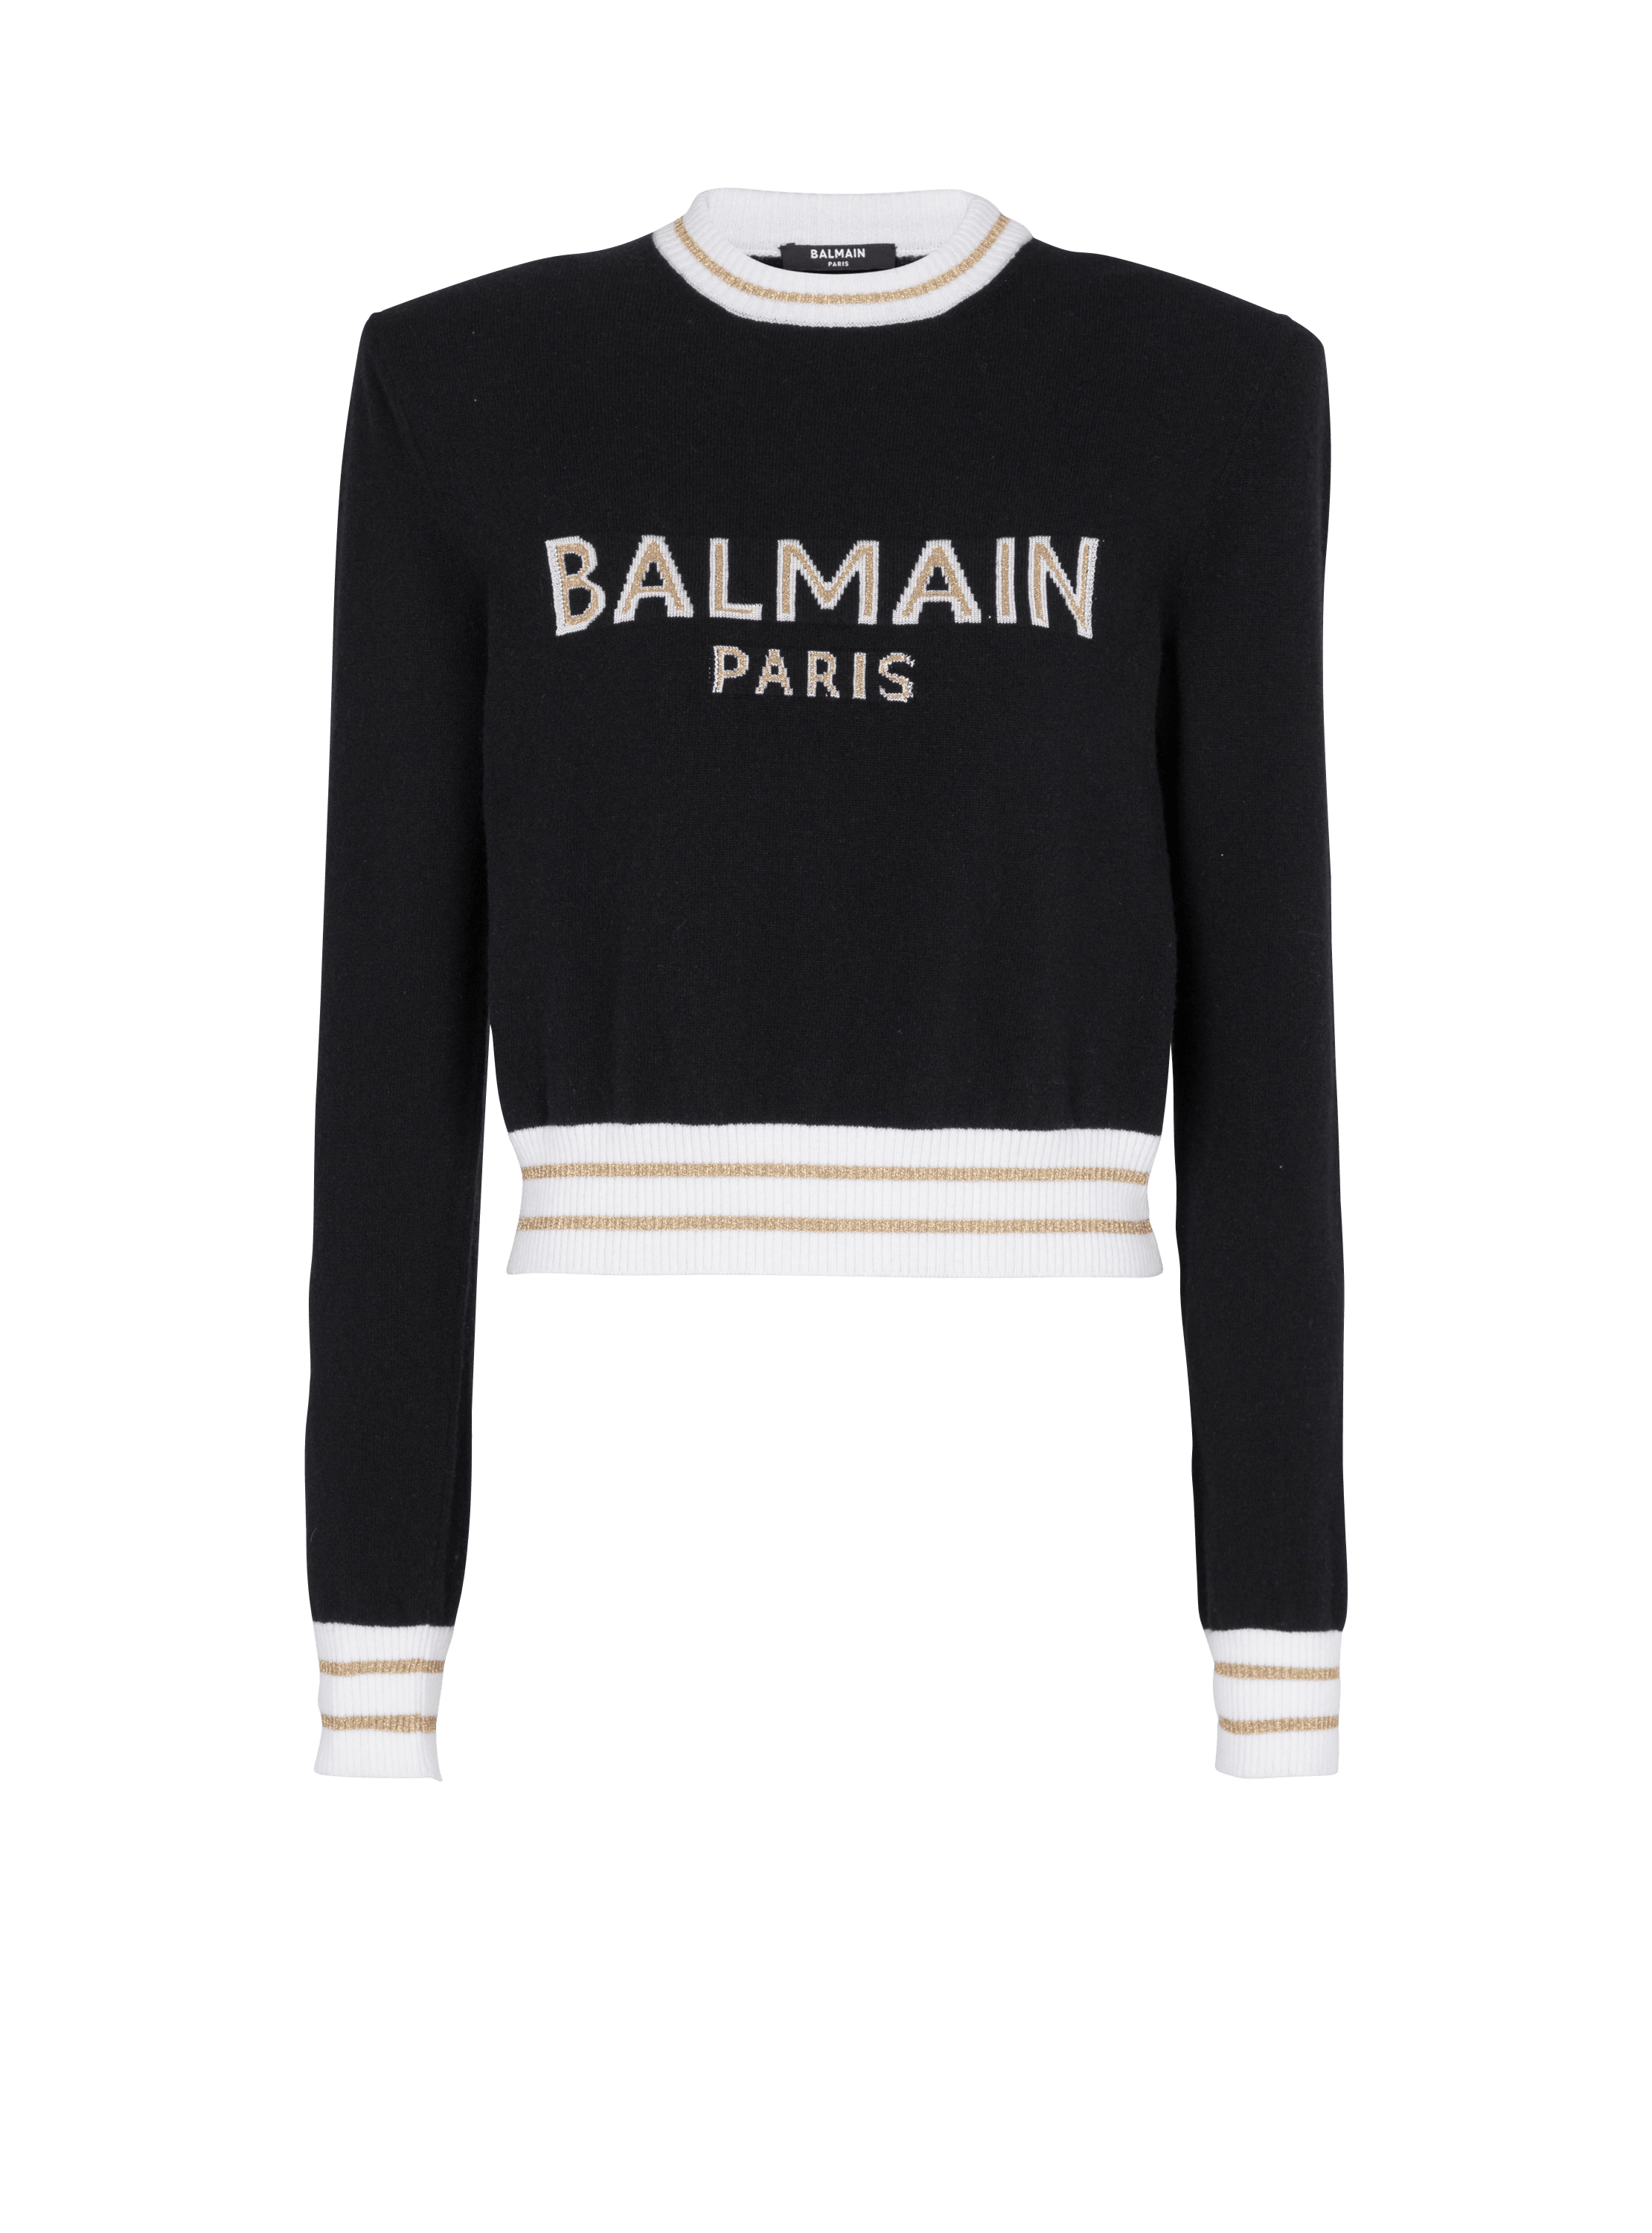 Sweat court en laine à logo Balmain, noir, hi-res